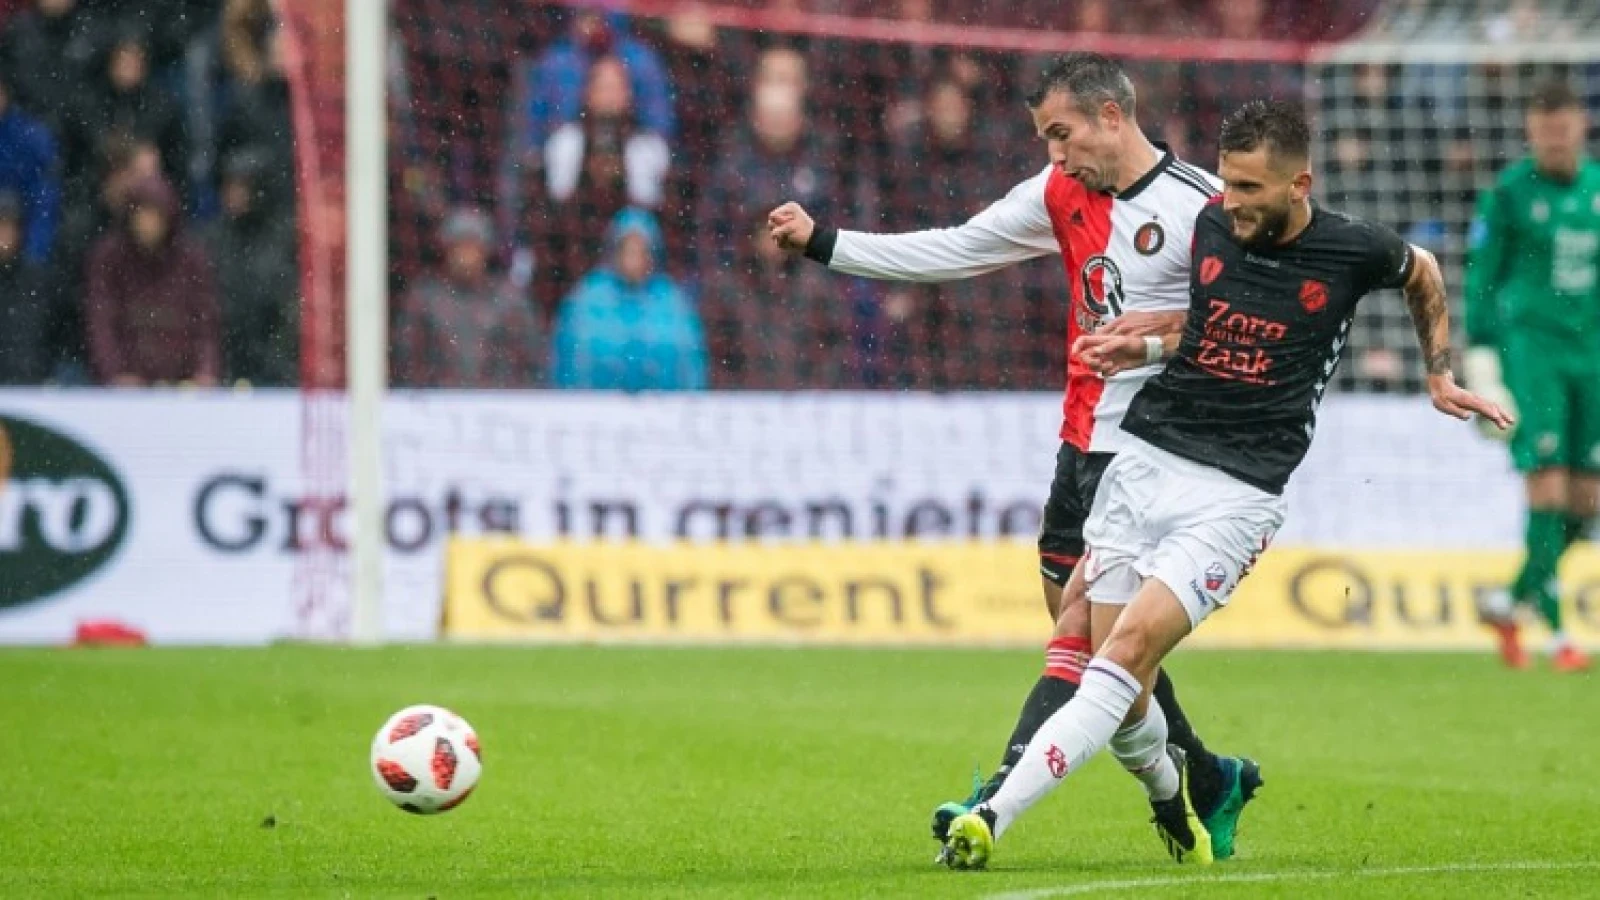 LIVE | Feyenoord - FC Utrecht 1-0 | Einde wedstrijd